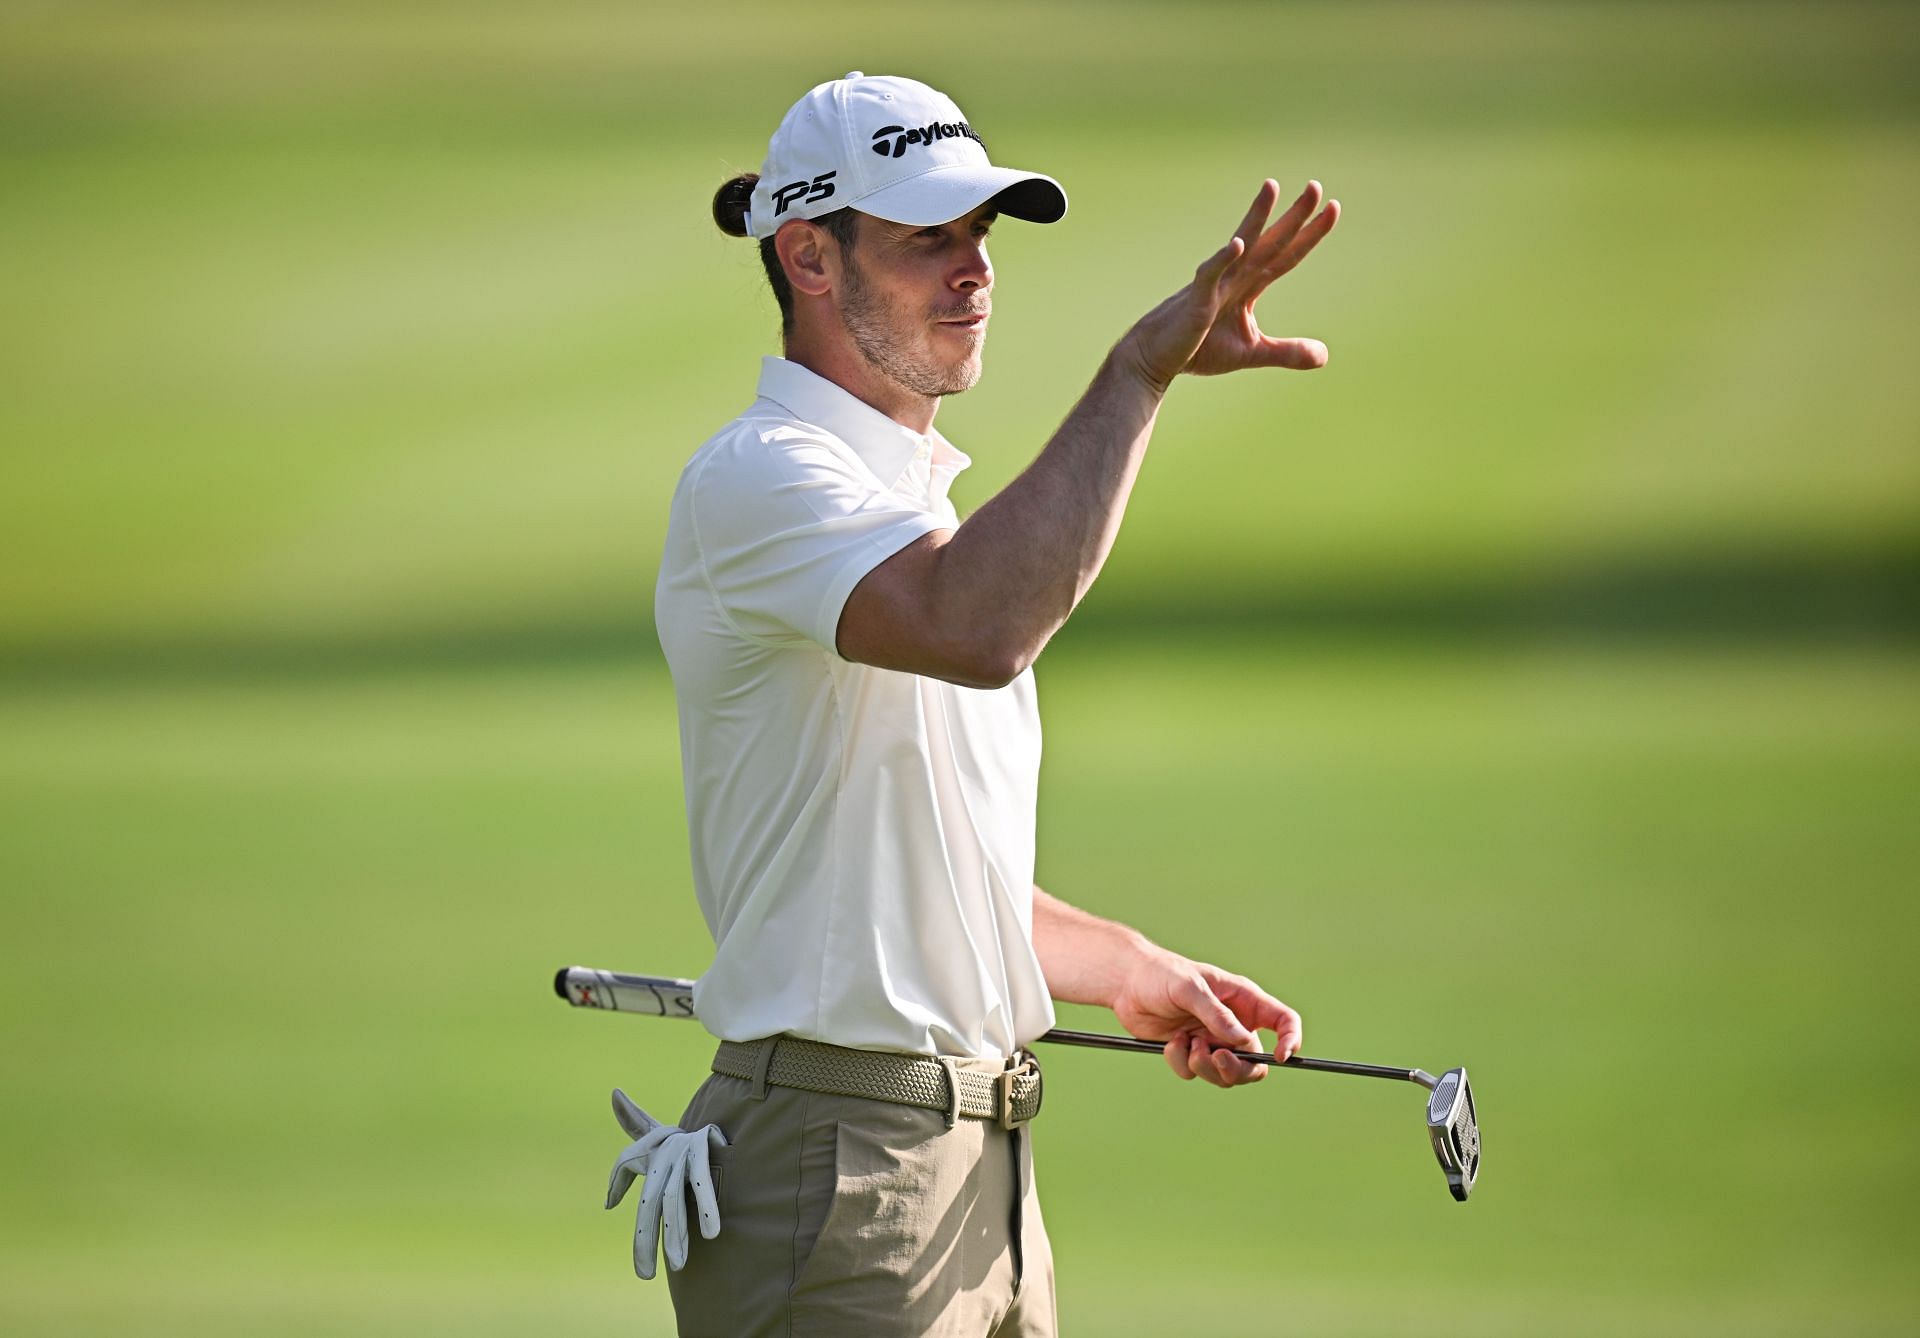 Jon Rahm raves about Gareth Bale's golf game at PGA Tour pro-am